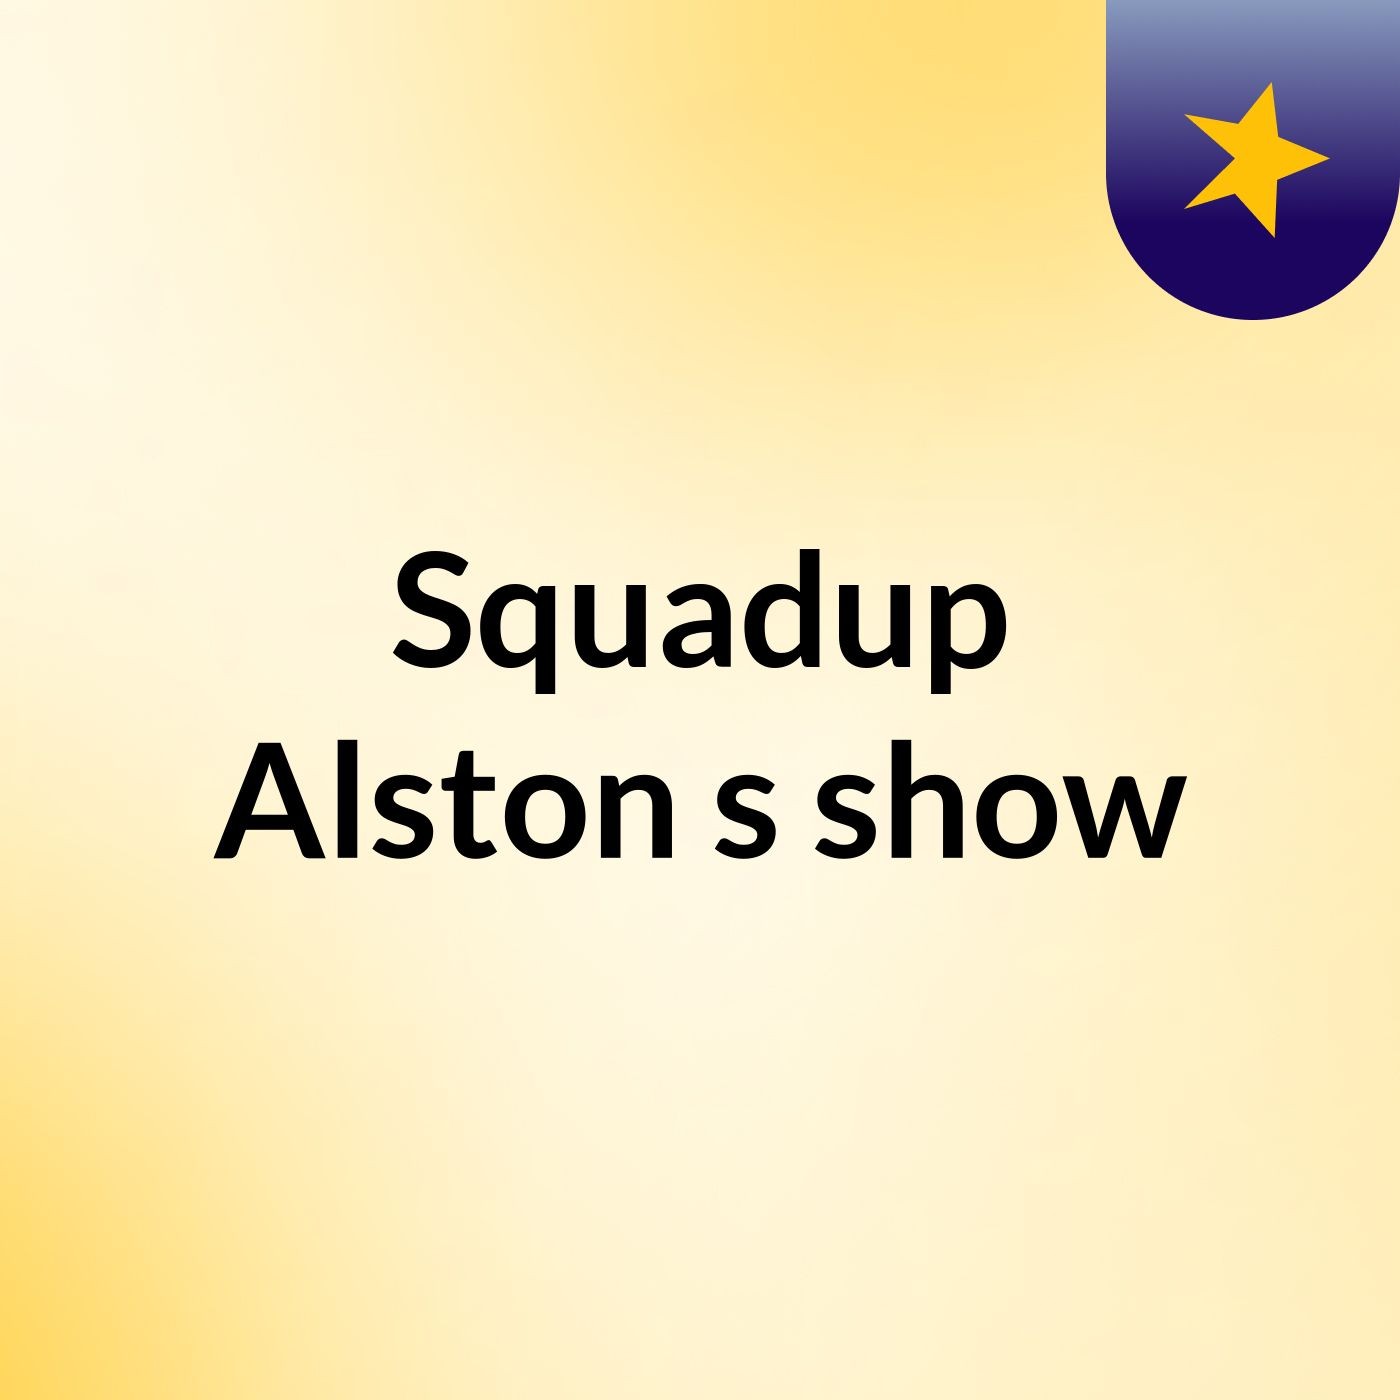 Squadup Alston's show